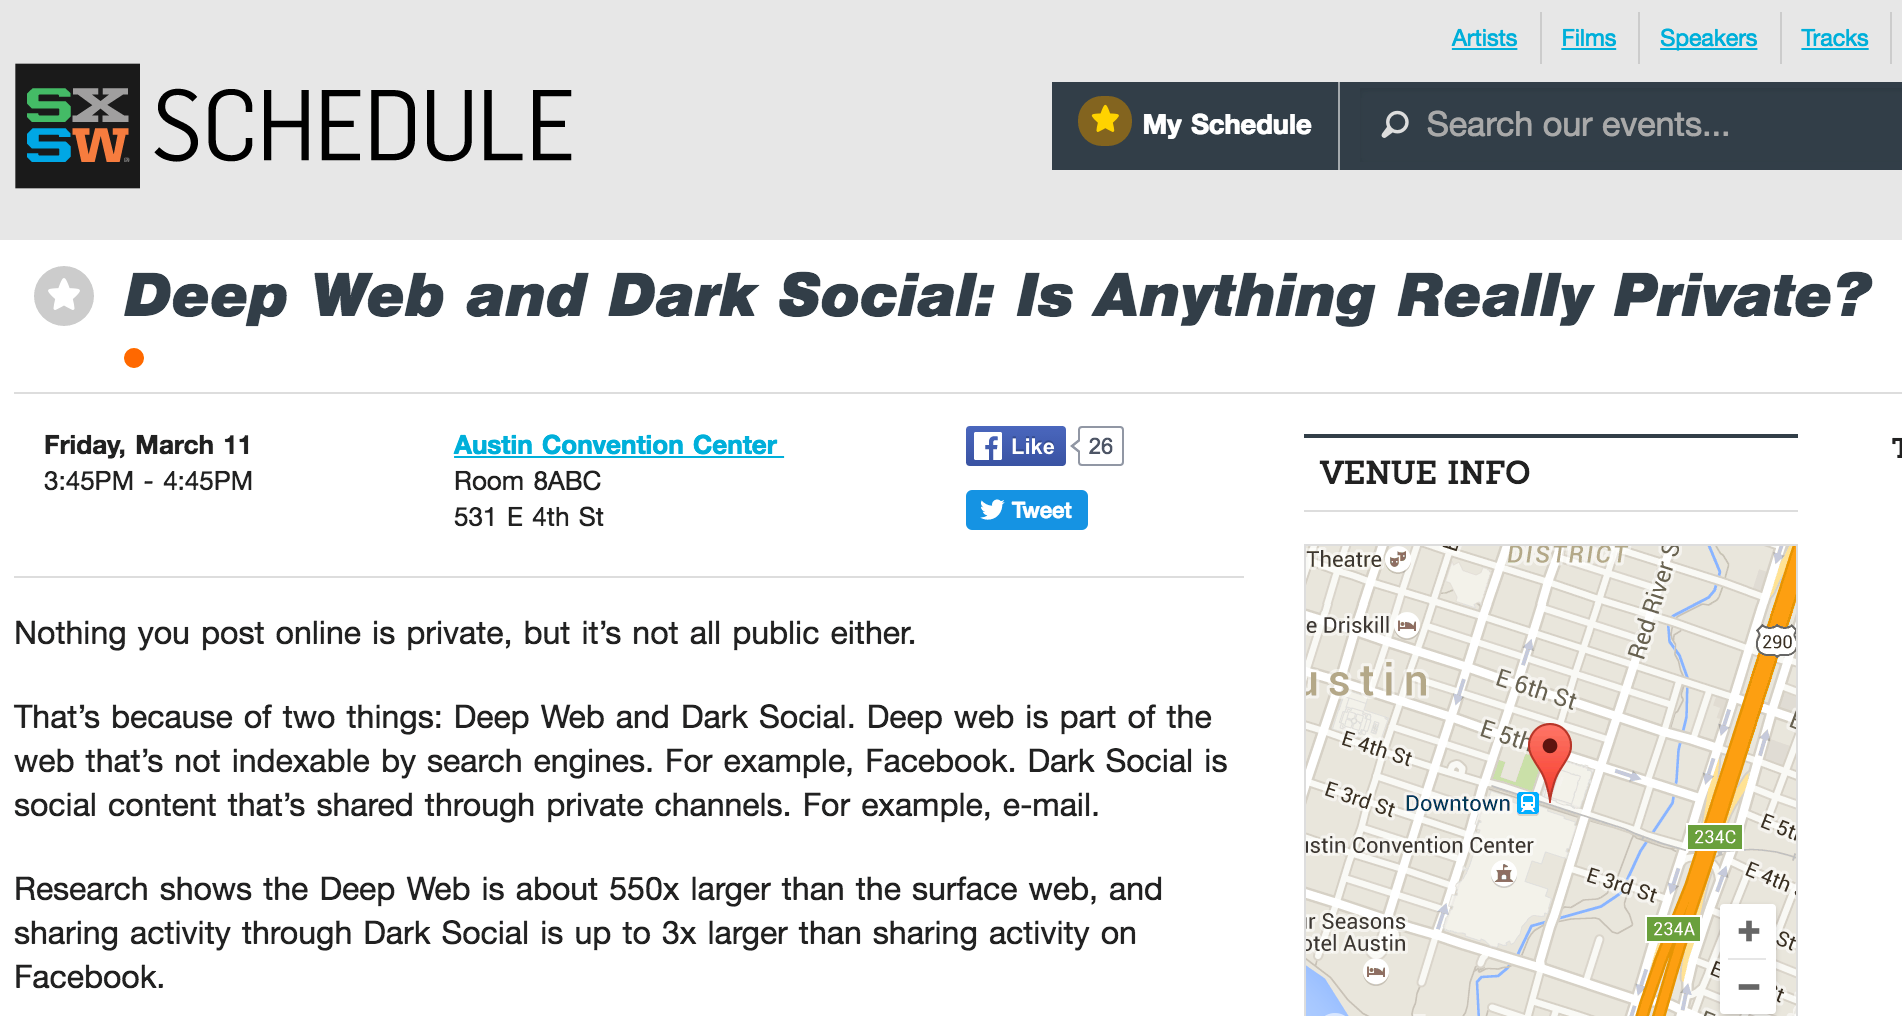 dark social